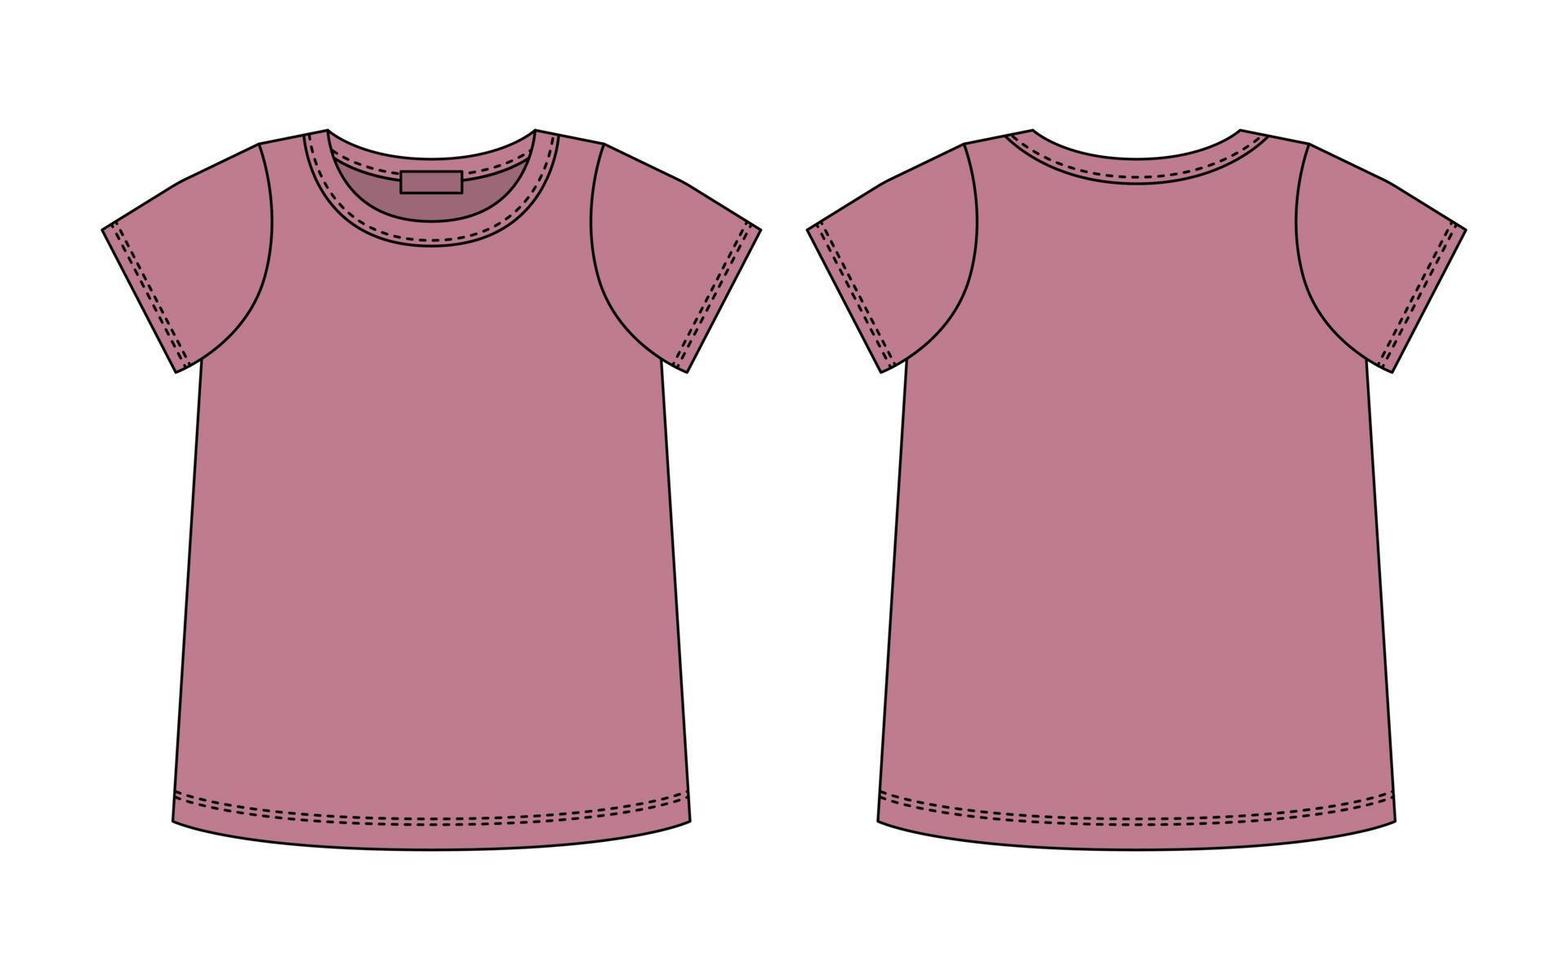 leeres t-shirt technische skizze. Pudra-Farbe. Entwurfsvorlage für weibliche T-Shirts vektor